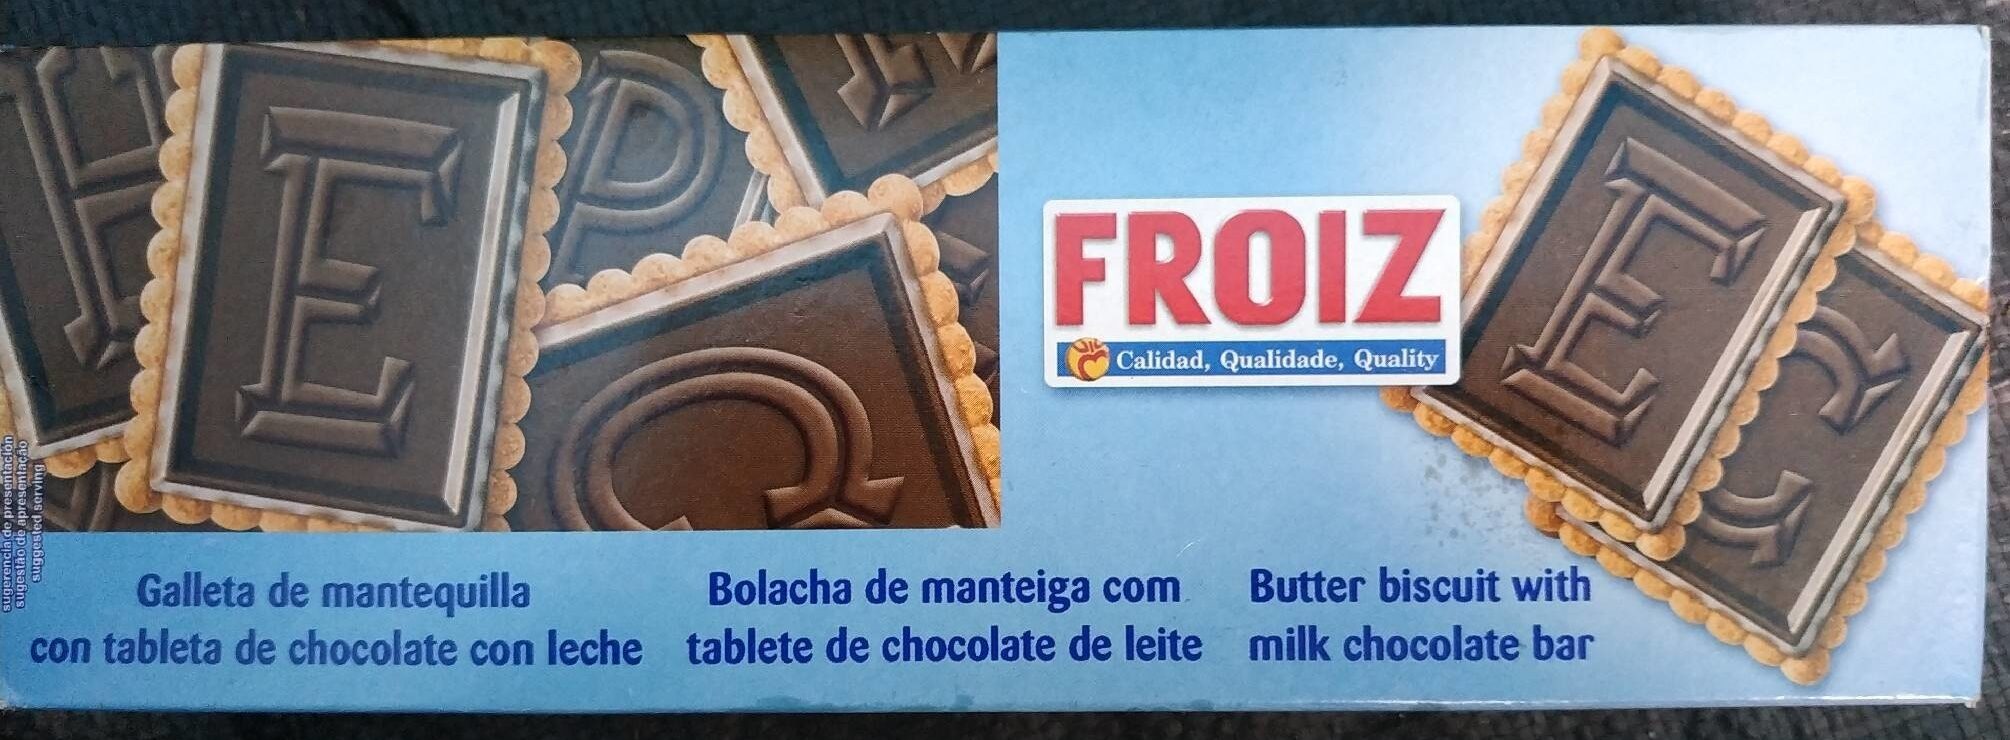 Galleta de mantequilla con tablette de chocolate con leche - Producte - es